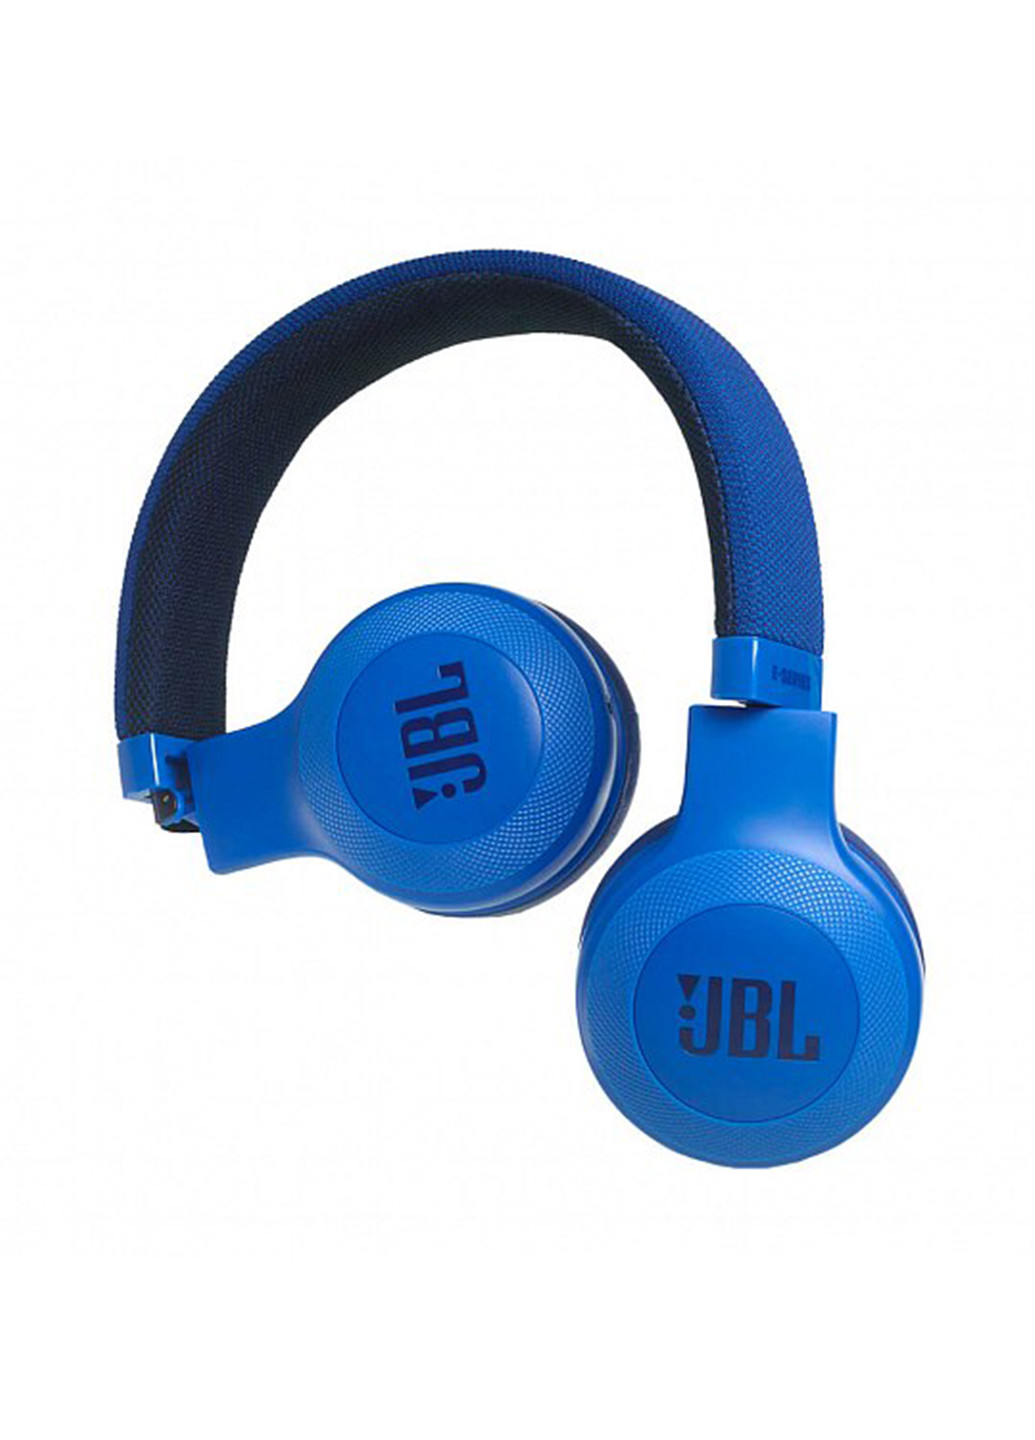 Навушники E35 Blue (E35BLU) JBL jble35 (131629226)